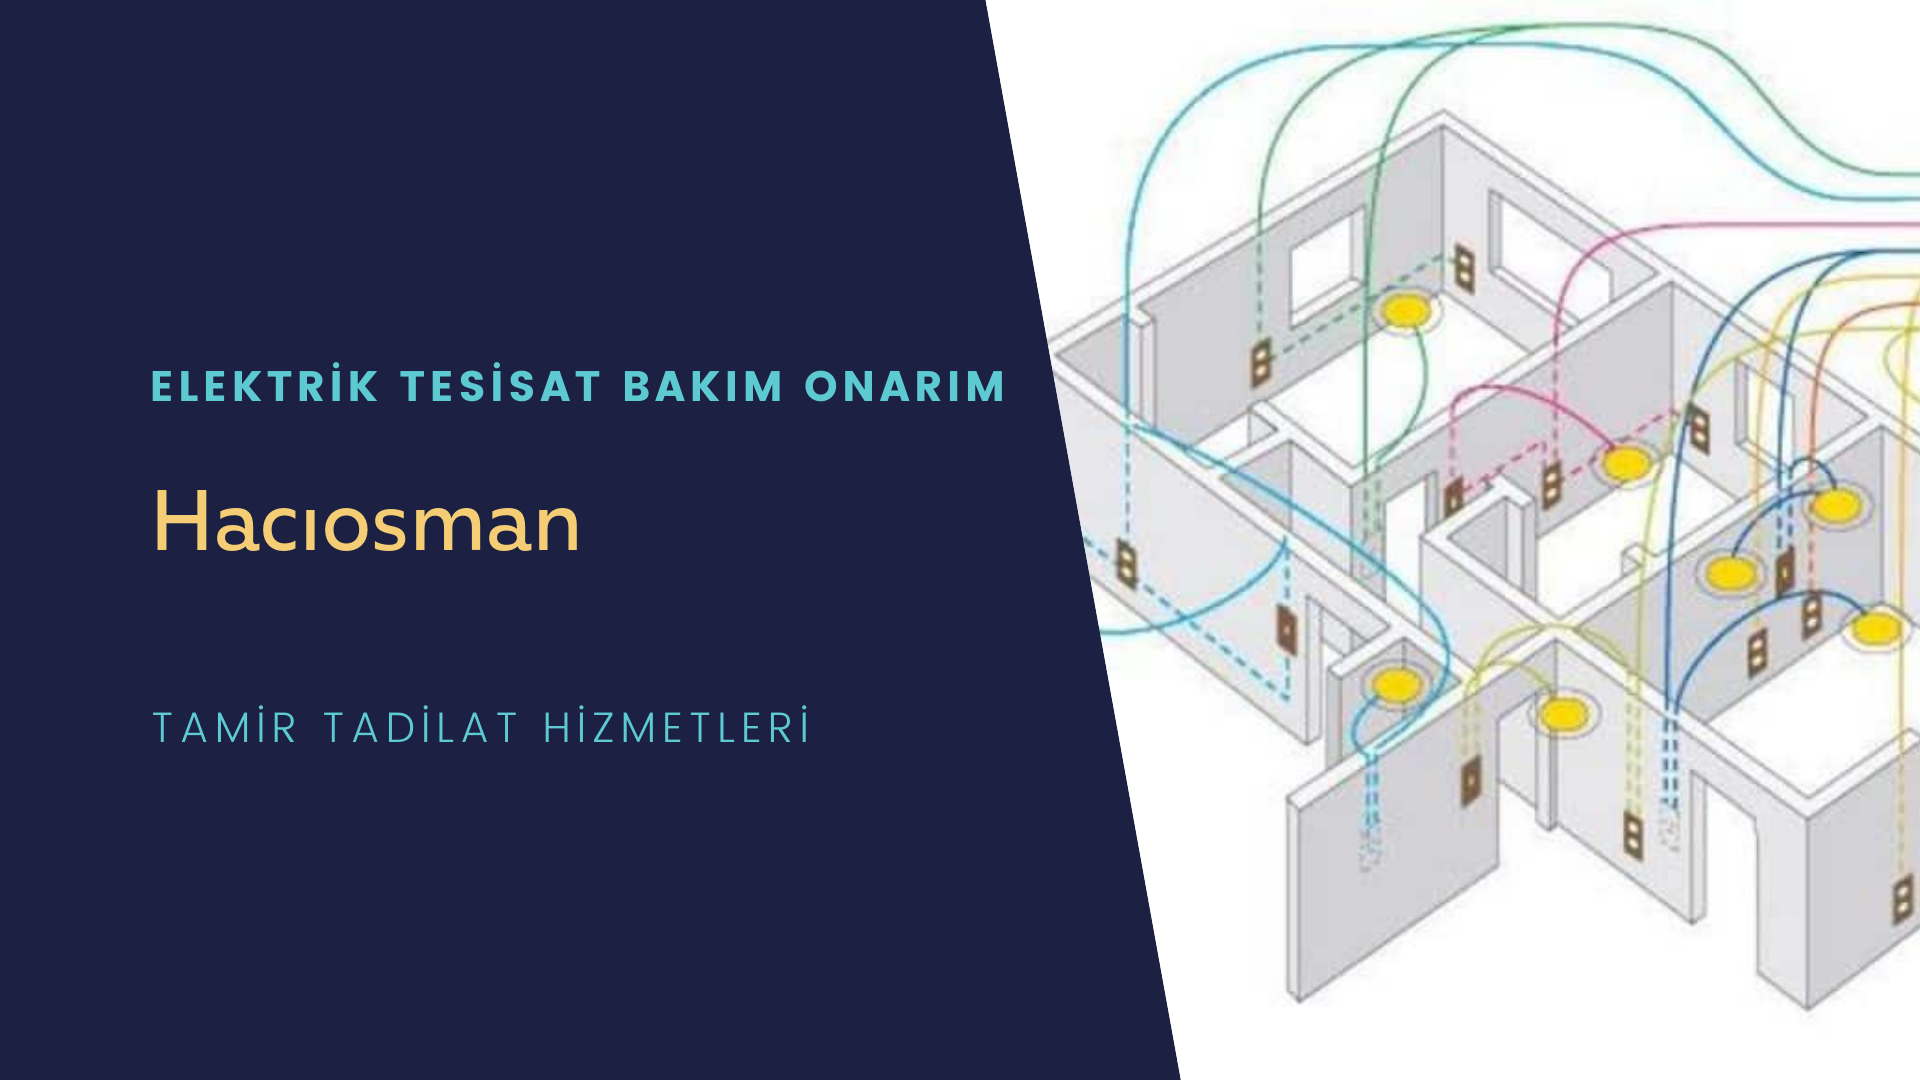 Hacıosman'da elektrik tesisatı ustalarımı arıyorsunuz doğru adrestenizi Hacıosman elektrik tesisatı ustalarımız 7/24 sizlere hizmet vermekten mutluluk duyar.